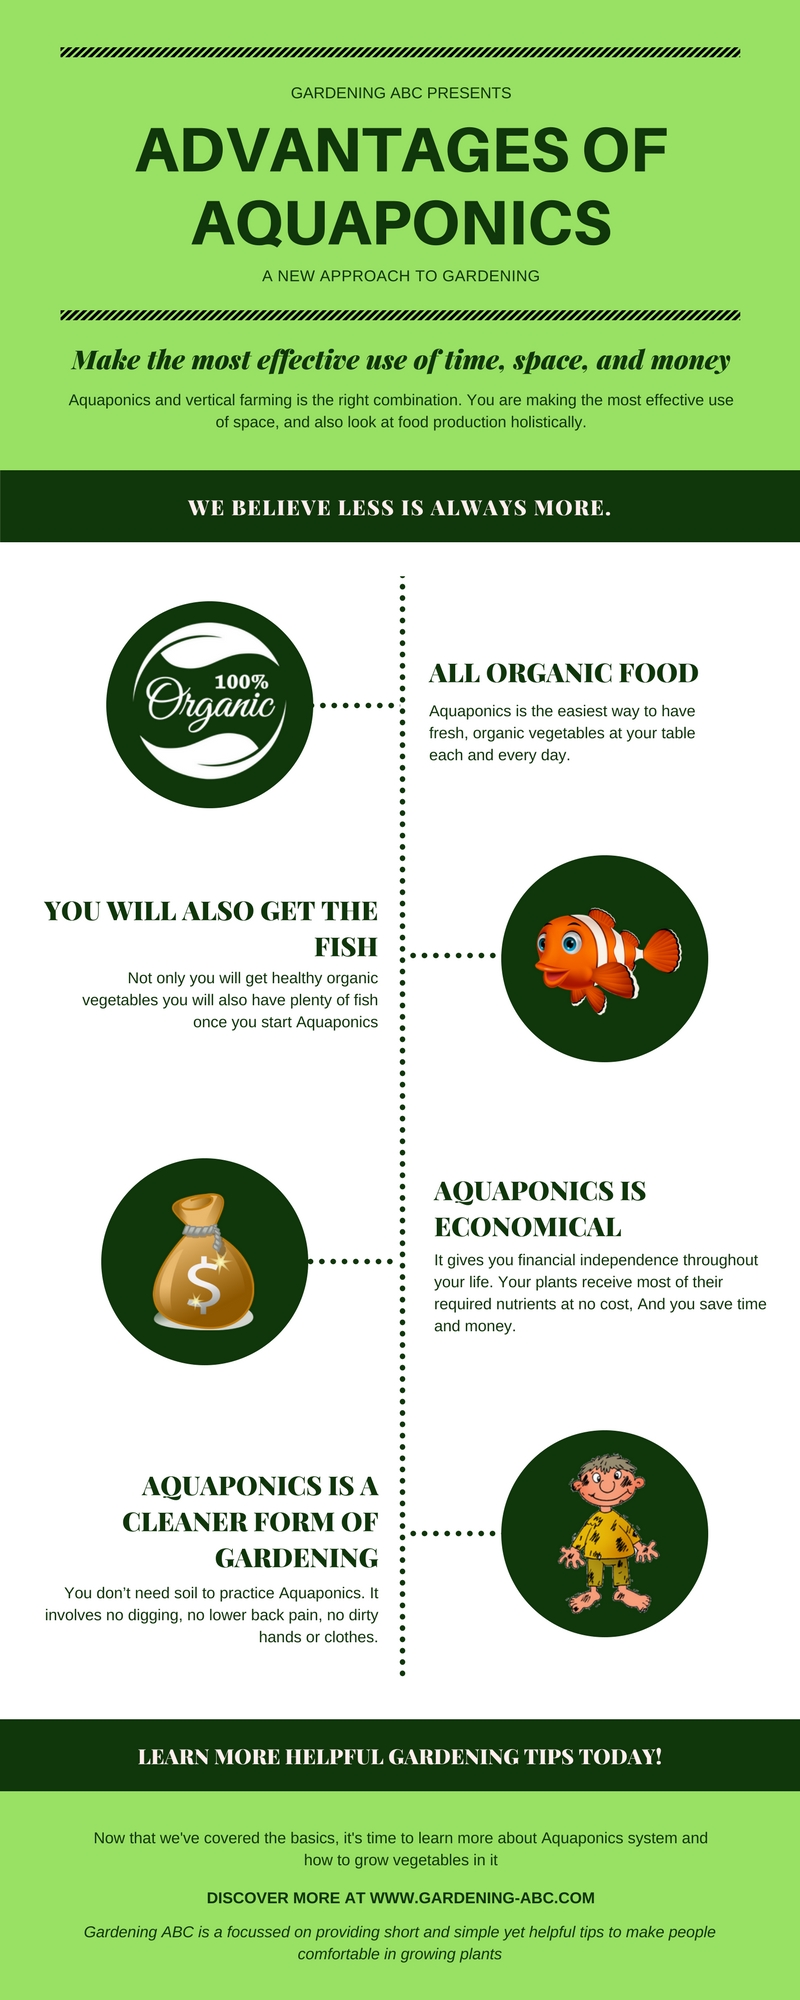 5 amazing advantages of aquaponics